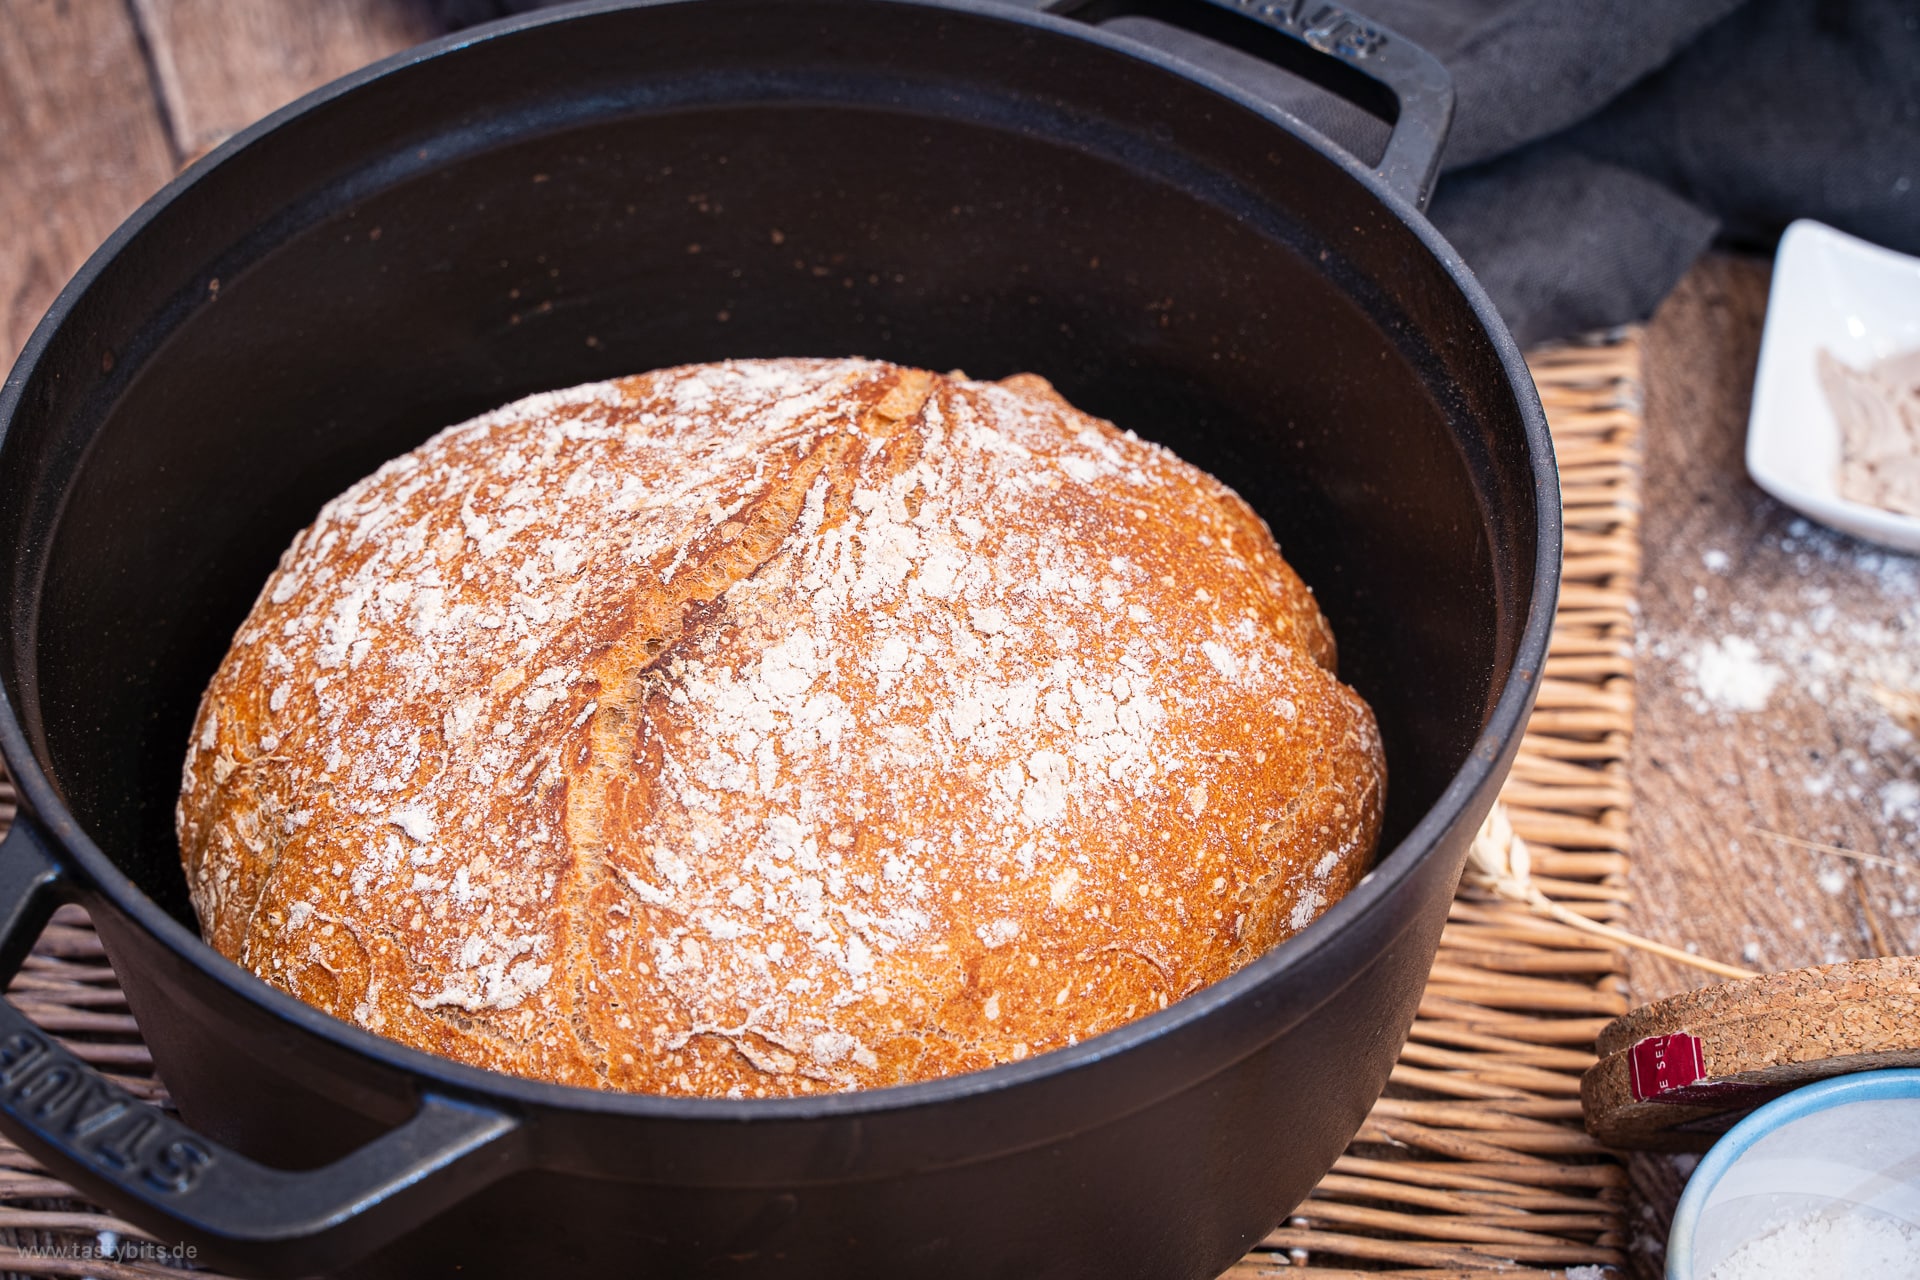 Schnelles Brot backen - das Rezept mit NUR 4 Zutaten | tastybits.de